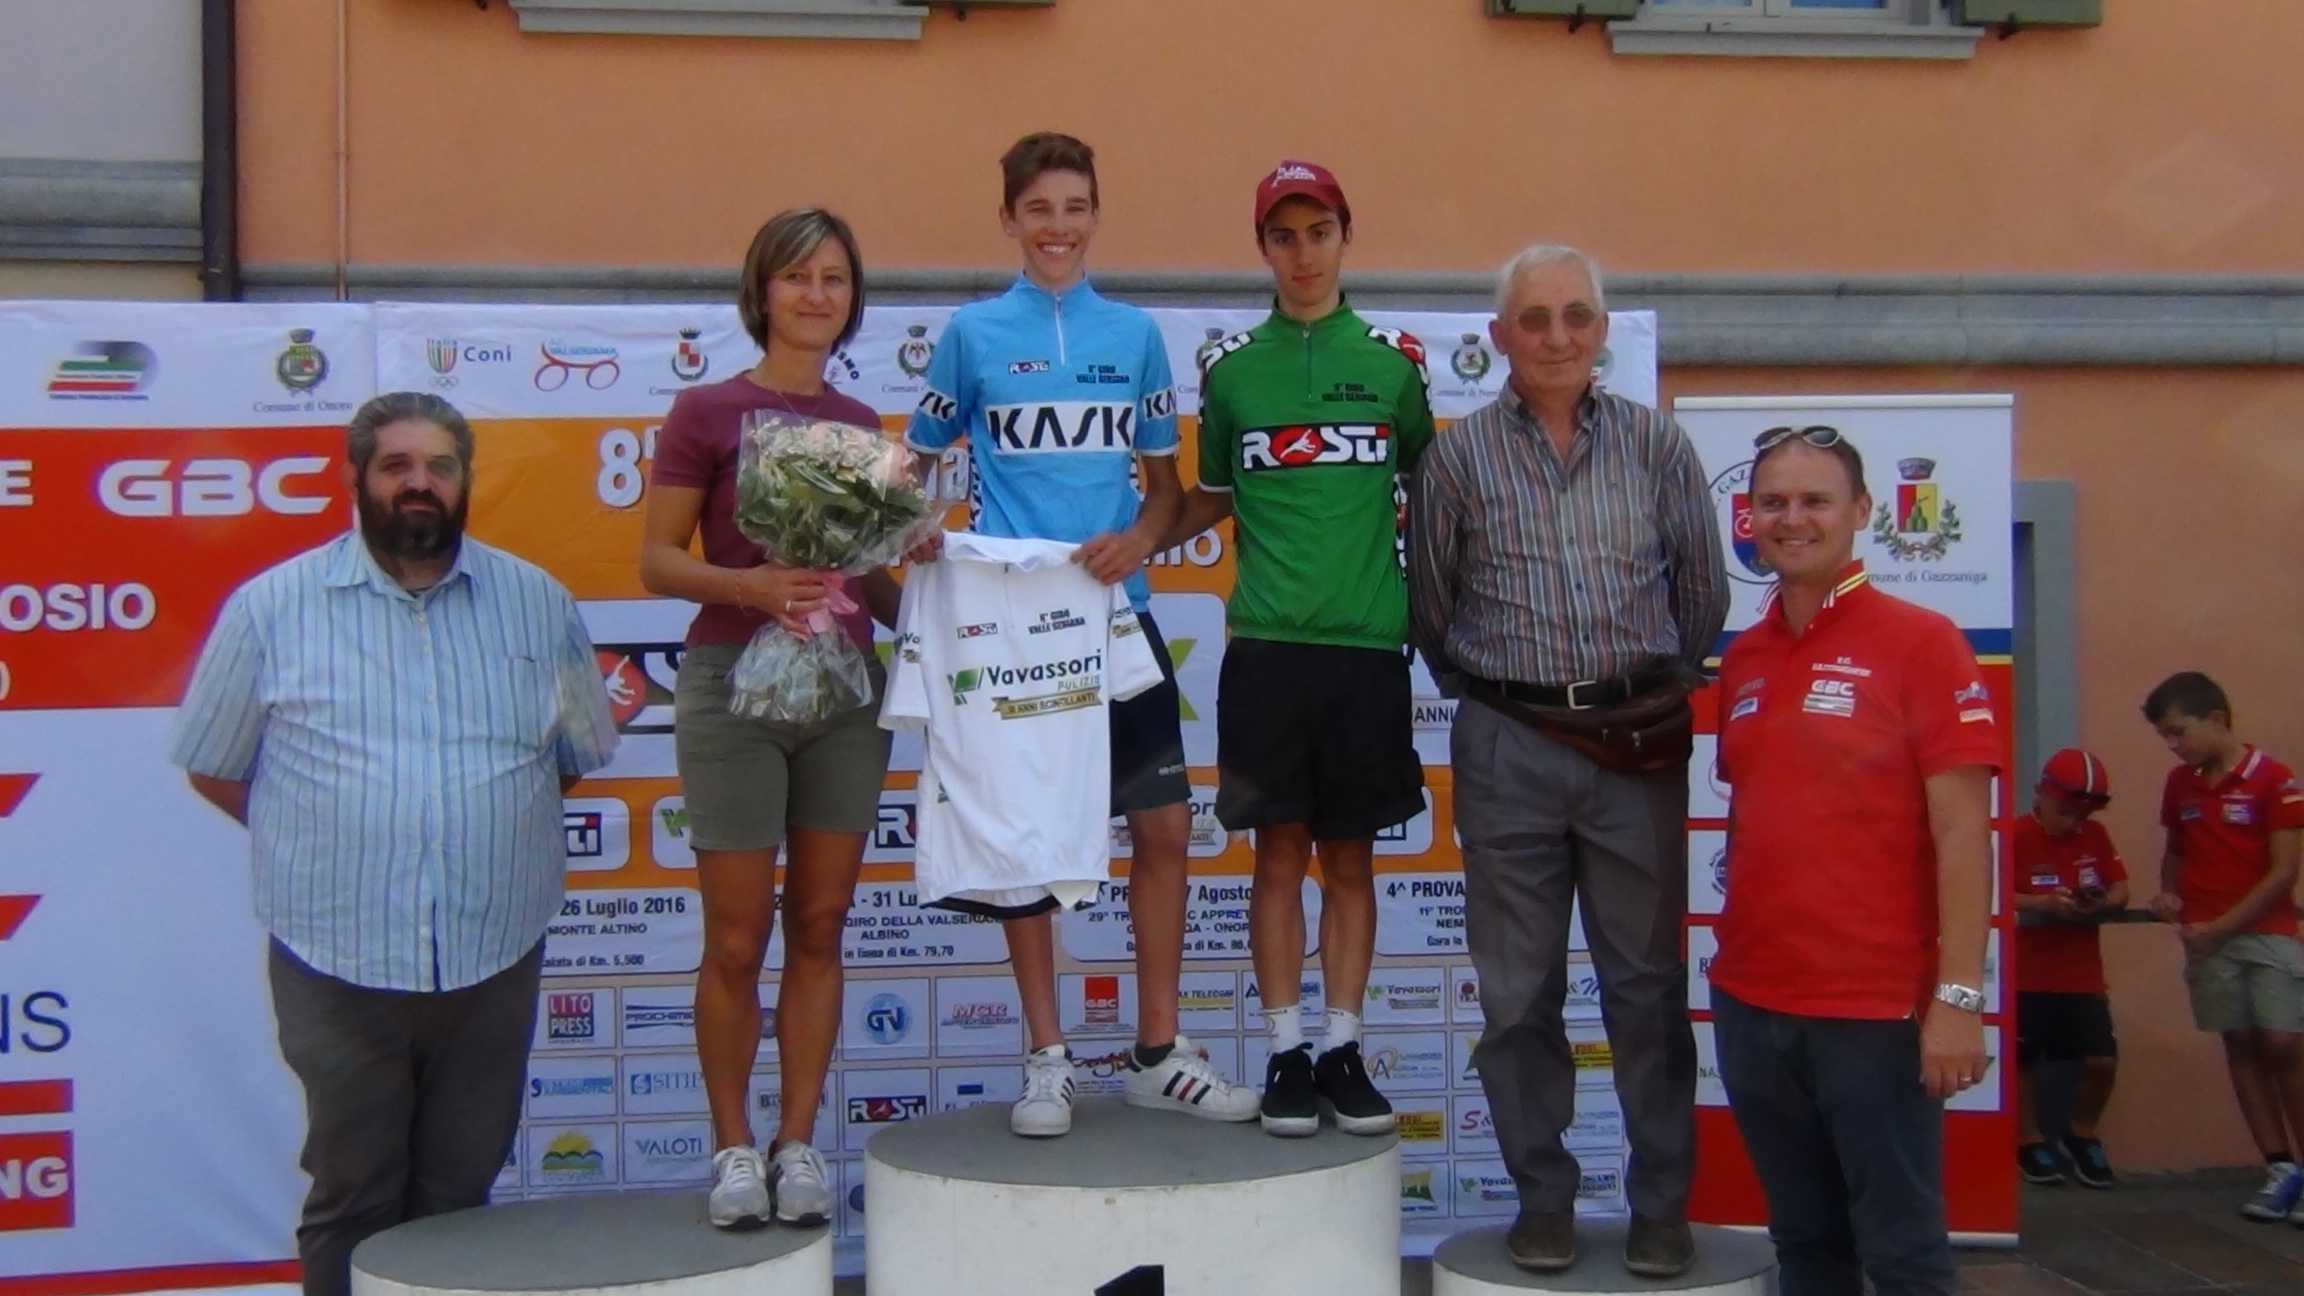 Nicola Plebani e Samuele Rubino leader delle classifiche dell'8° Giro della Valle Seriana dopo la seconda prova